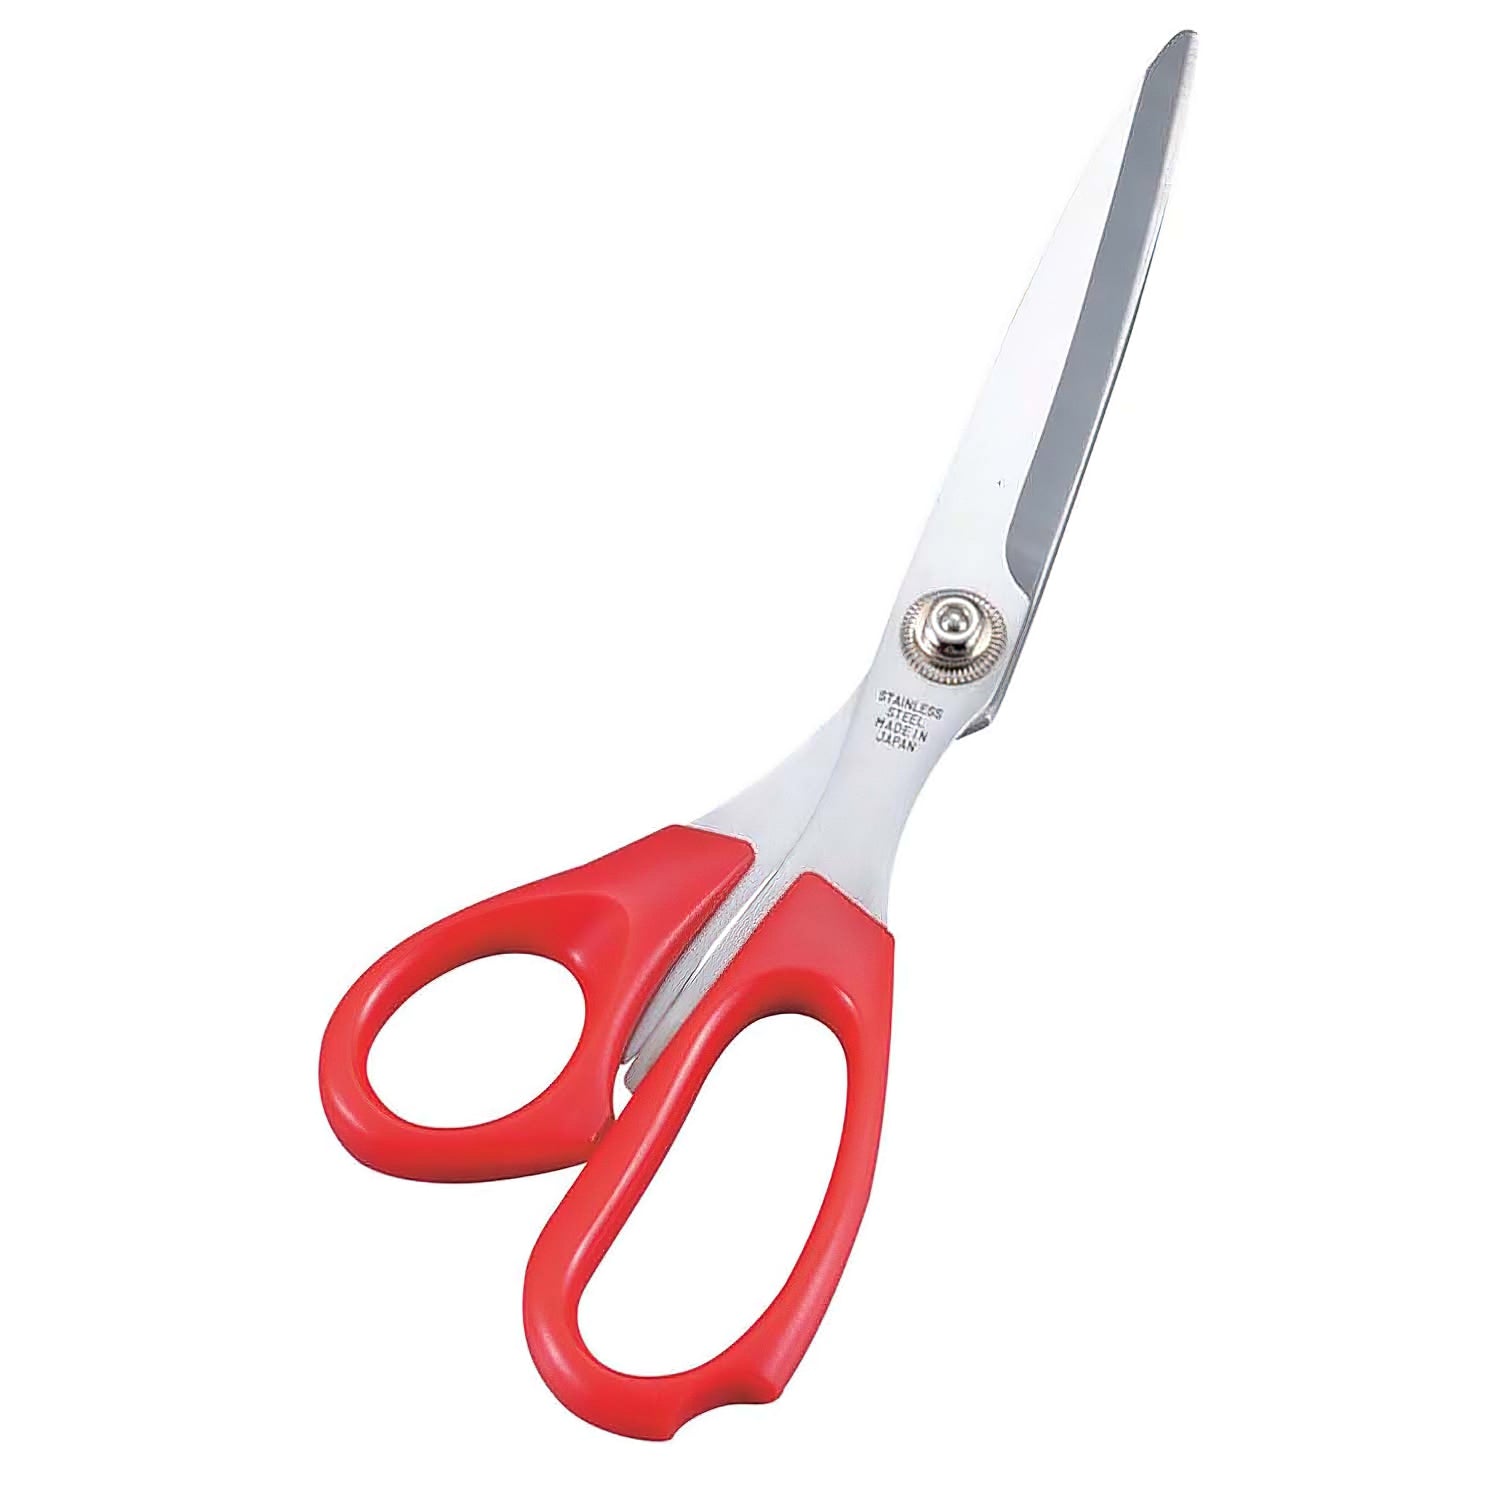 Allex Stainless Steel Scissors Red